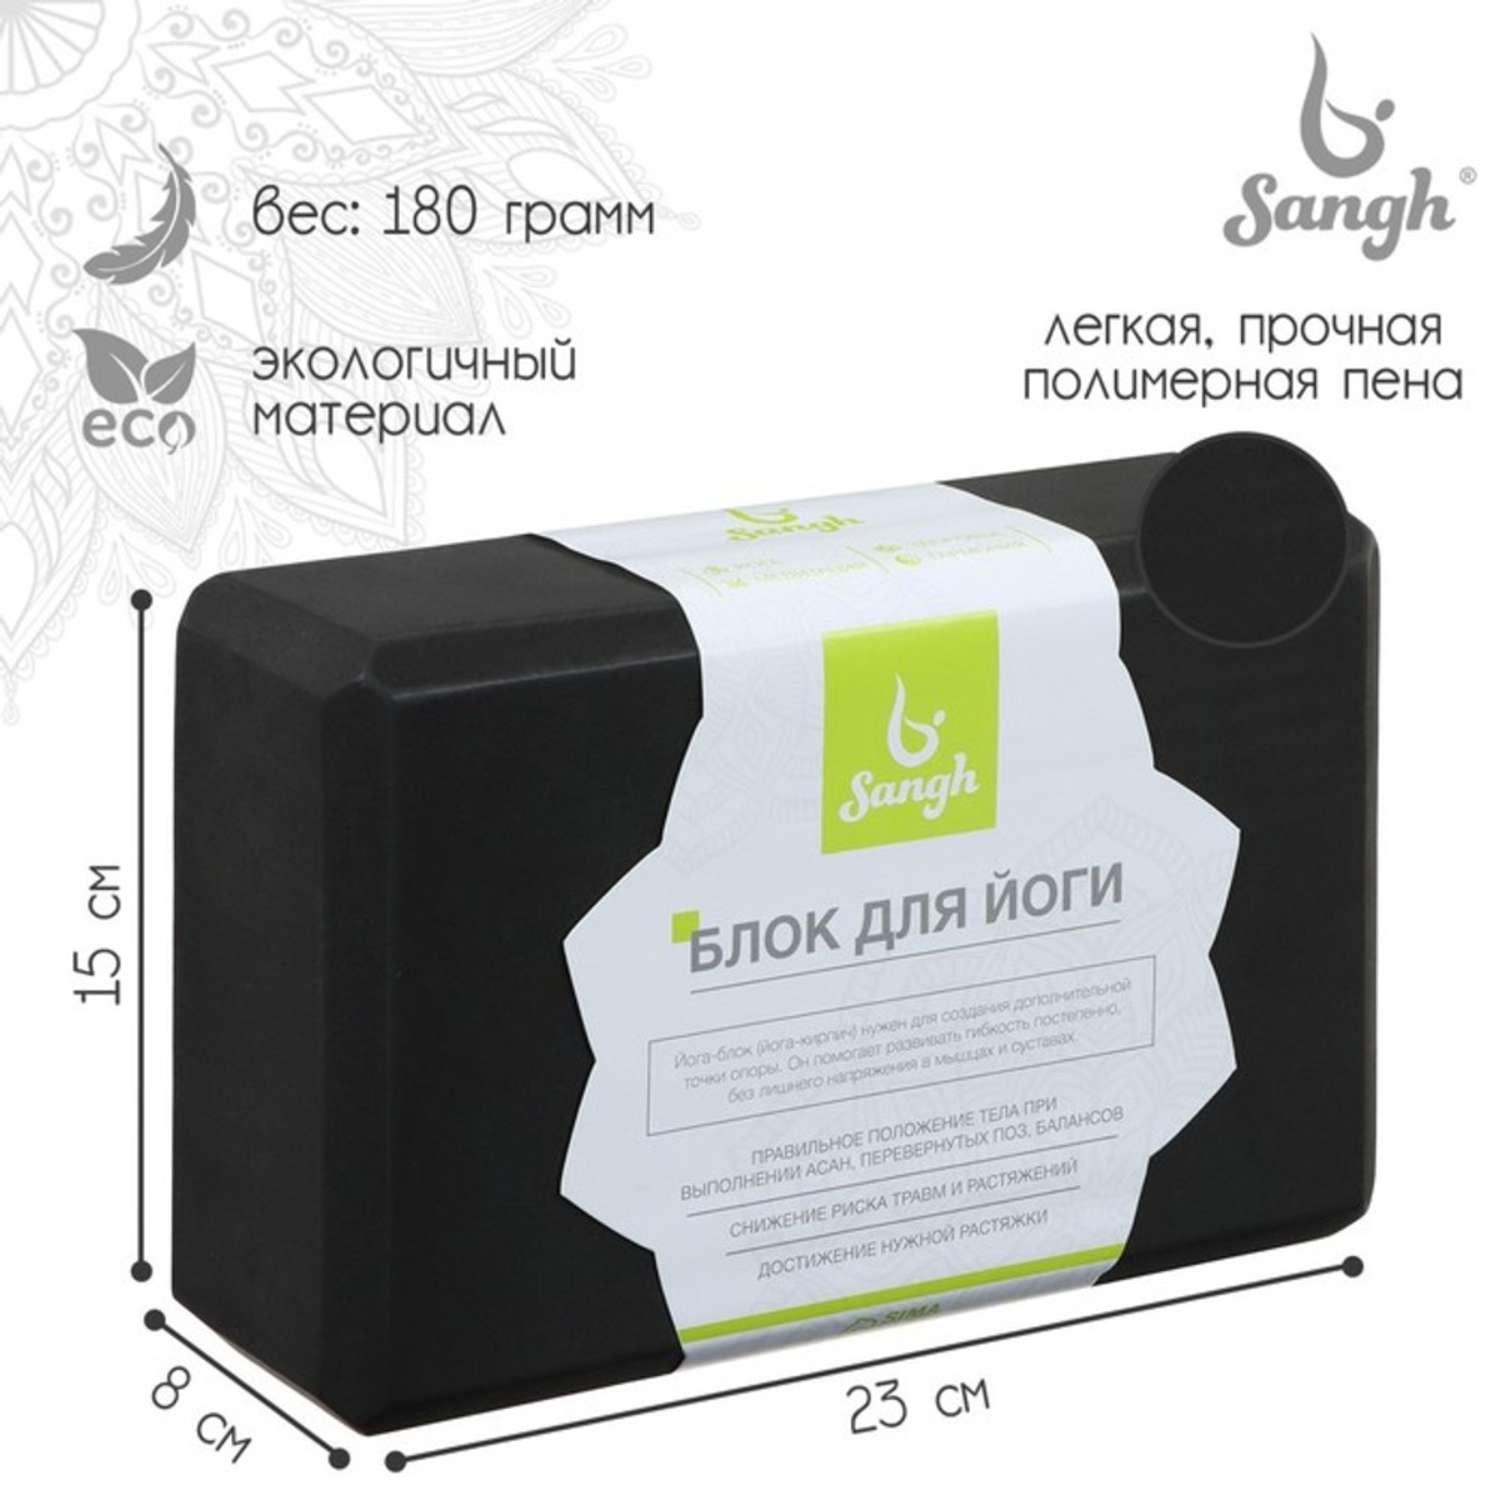 Блок для йоги Sangh 23 × 15 × 8 см. вес 180 г. цвет чёрный - фото 1